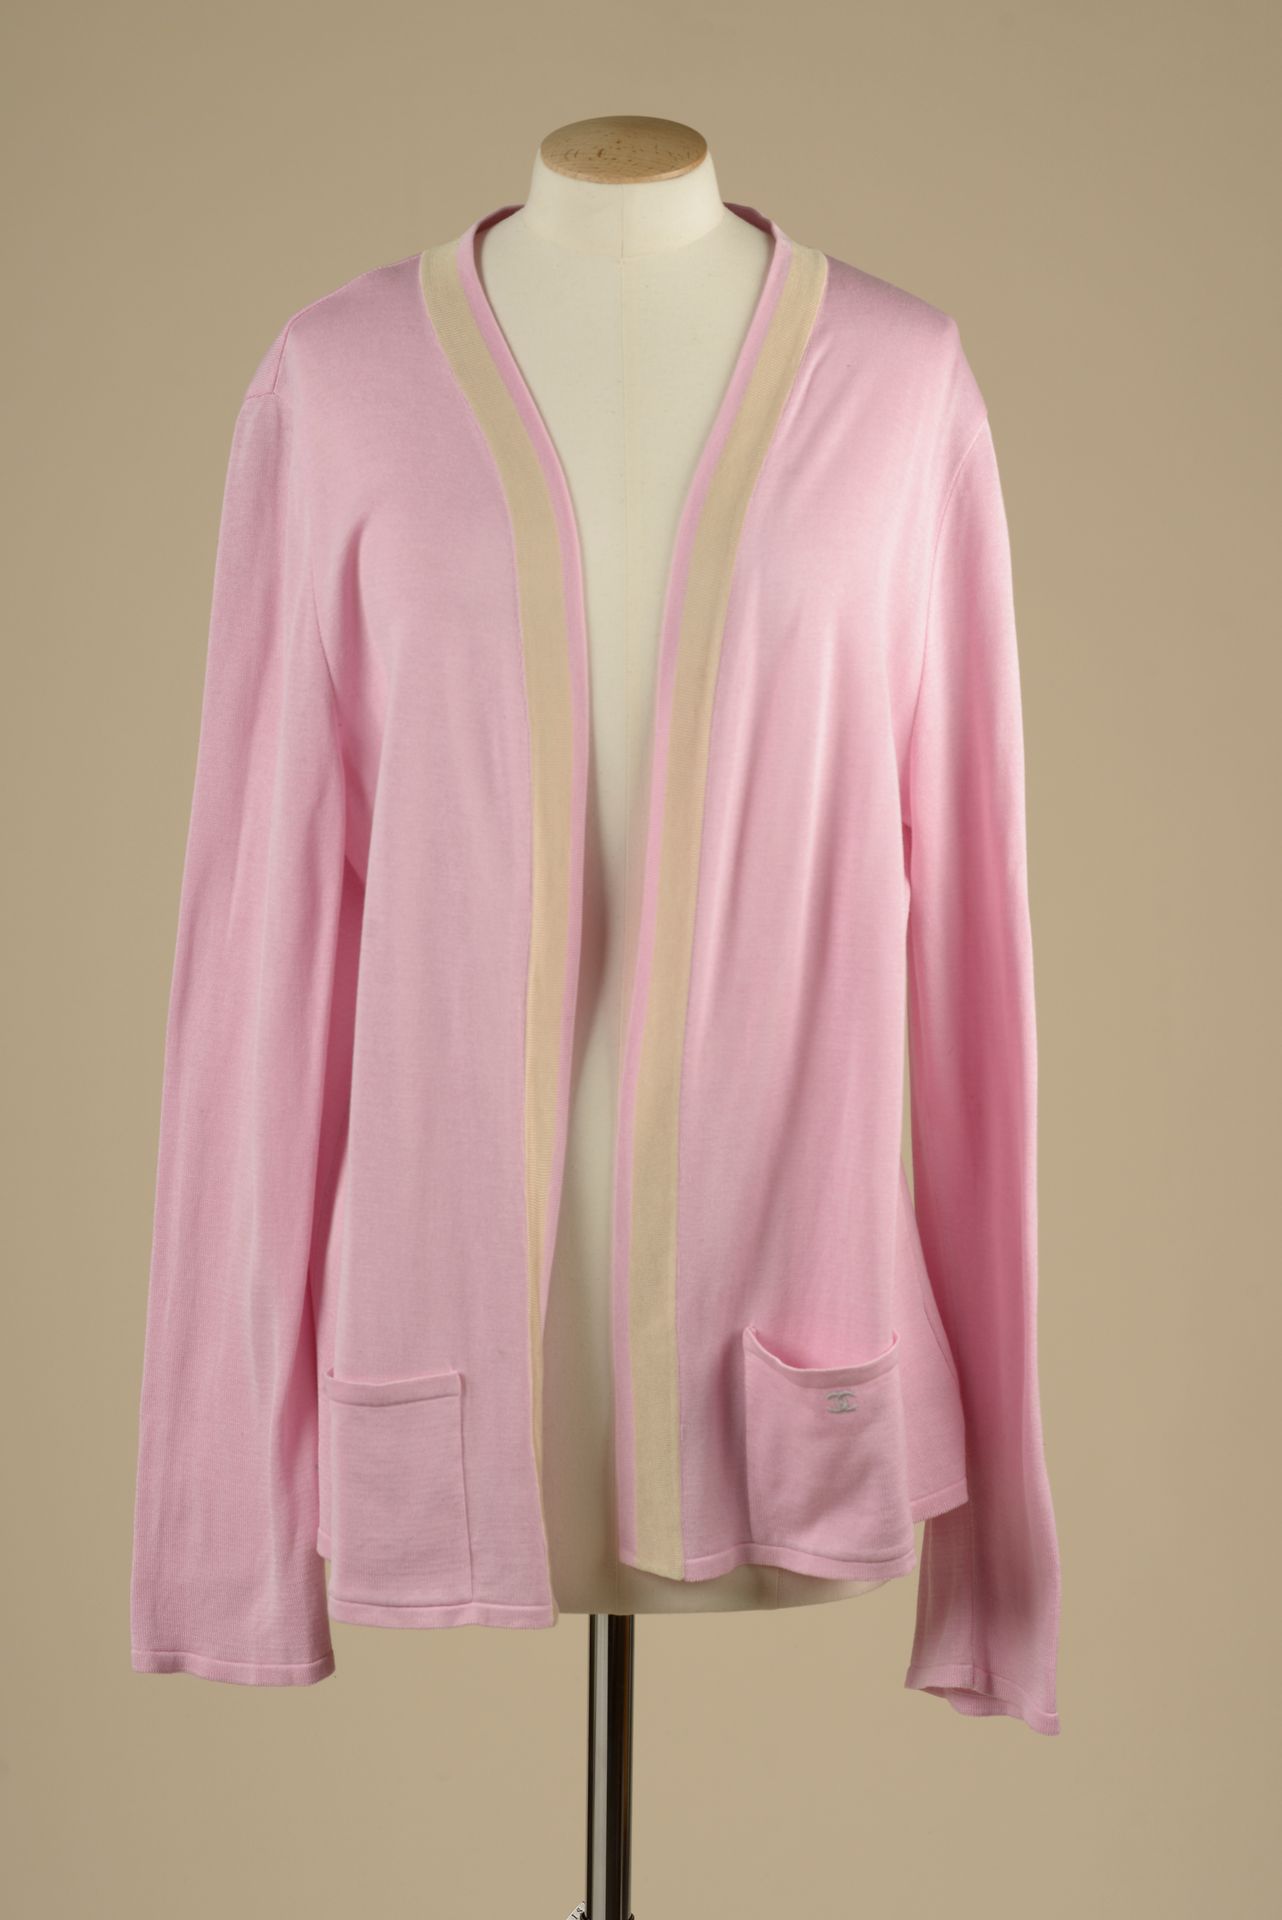 Null CHANEL Uniform.

Rosafarbene Strickjacke aus Baumwolle mit einem beigen Str&hellip;